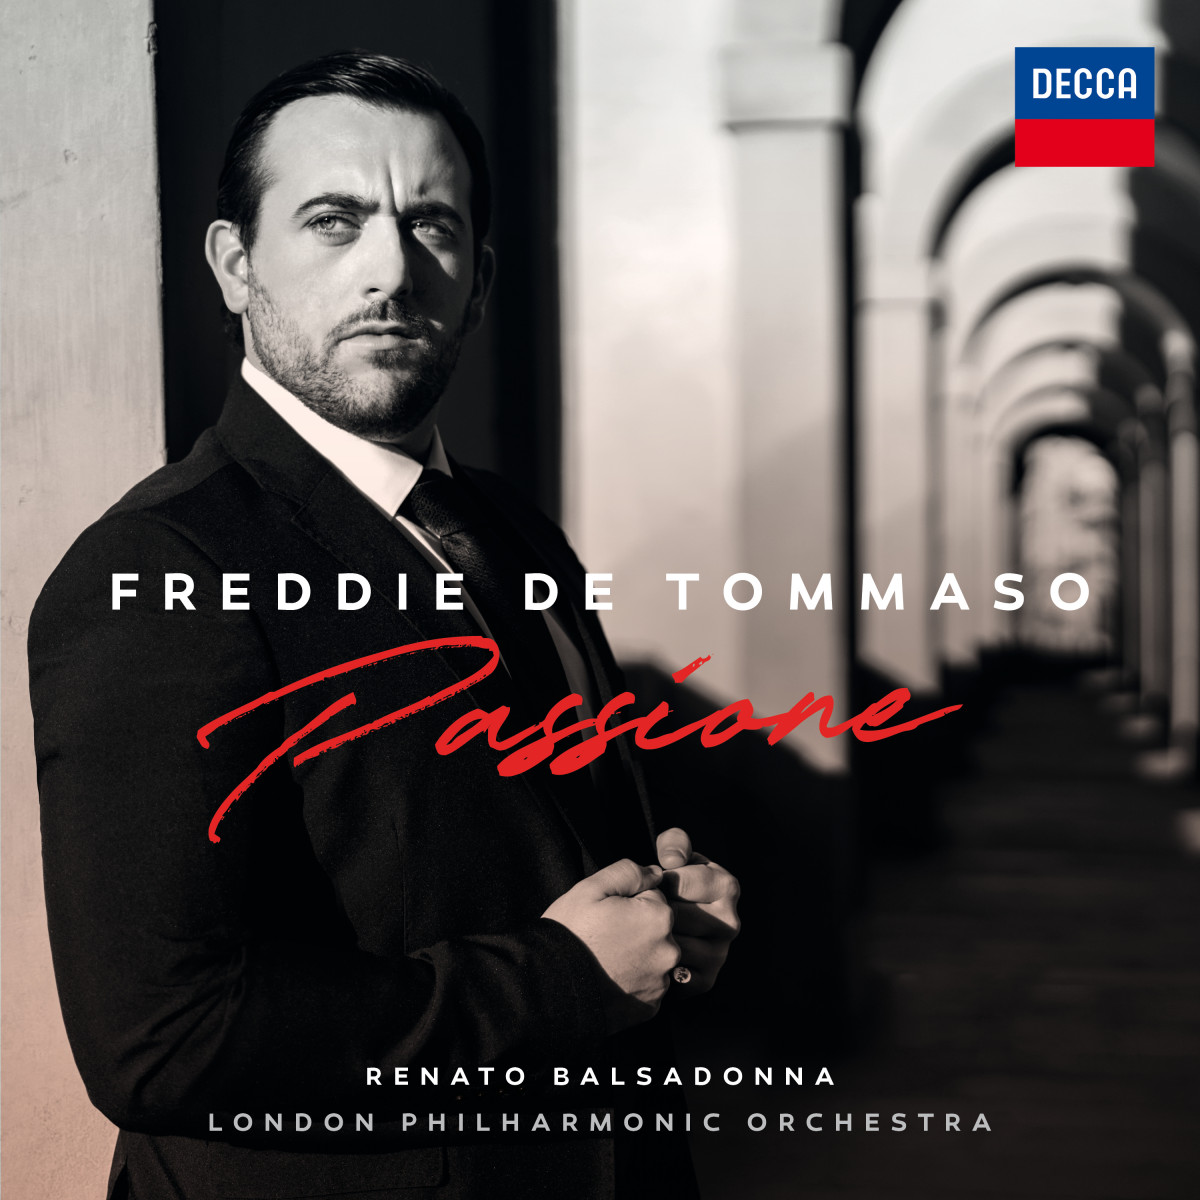 Freddie de Tommaso – Passione